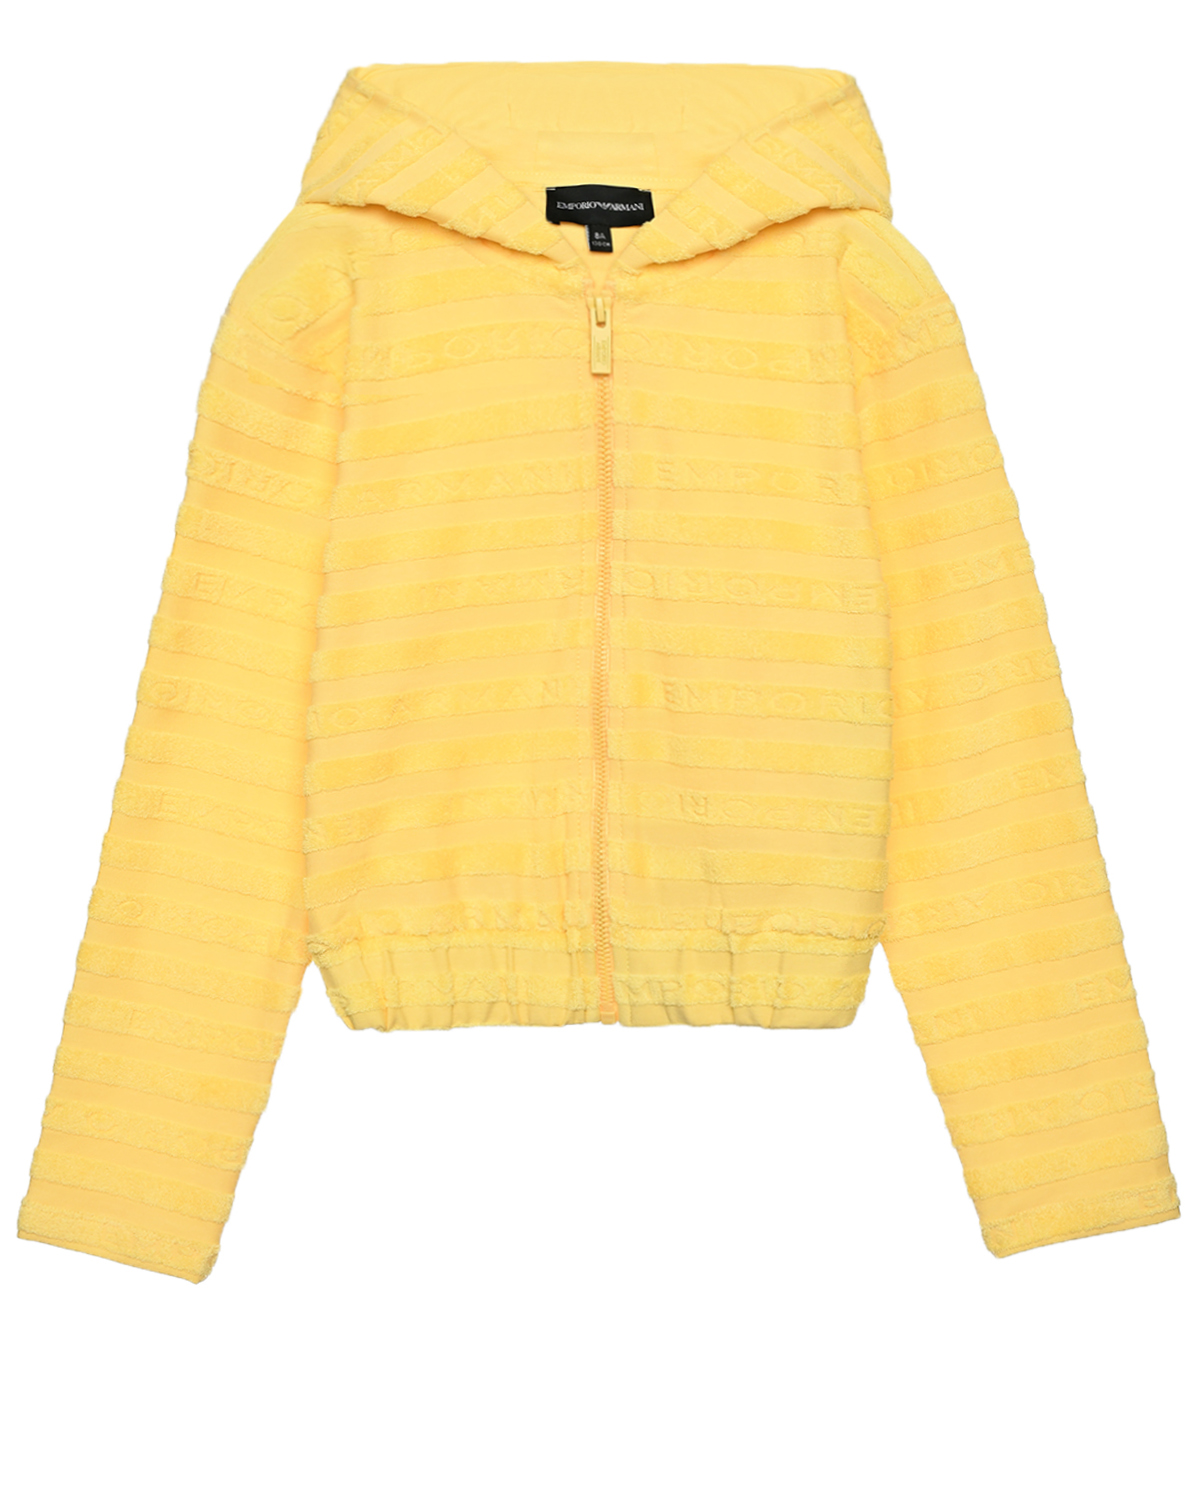 Куртка спортивная с капюшоном в махровую полоску, желтая Emporio Armani, размер 152, цвет желтый - фото 1